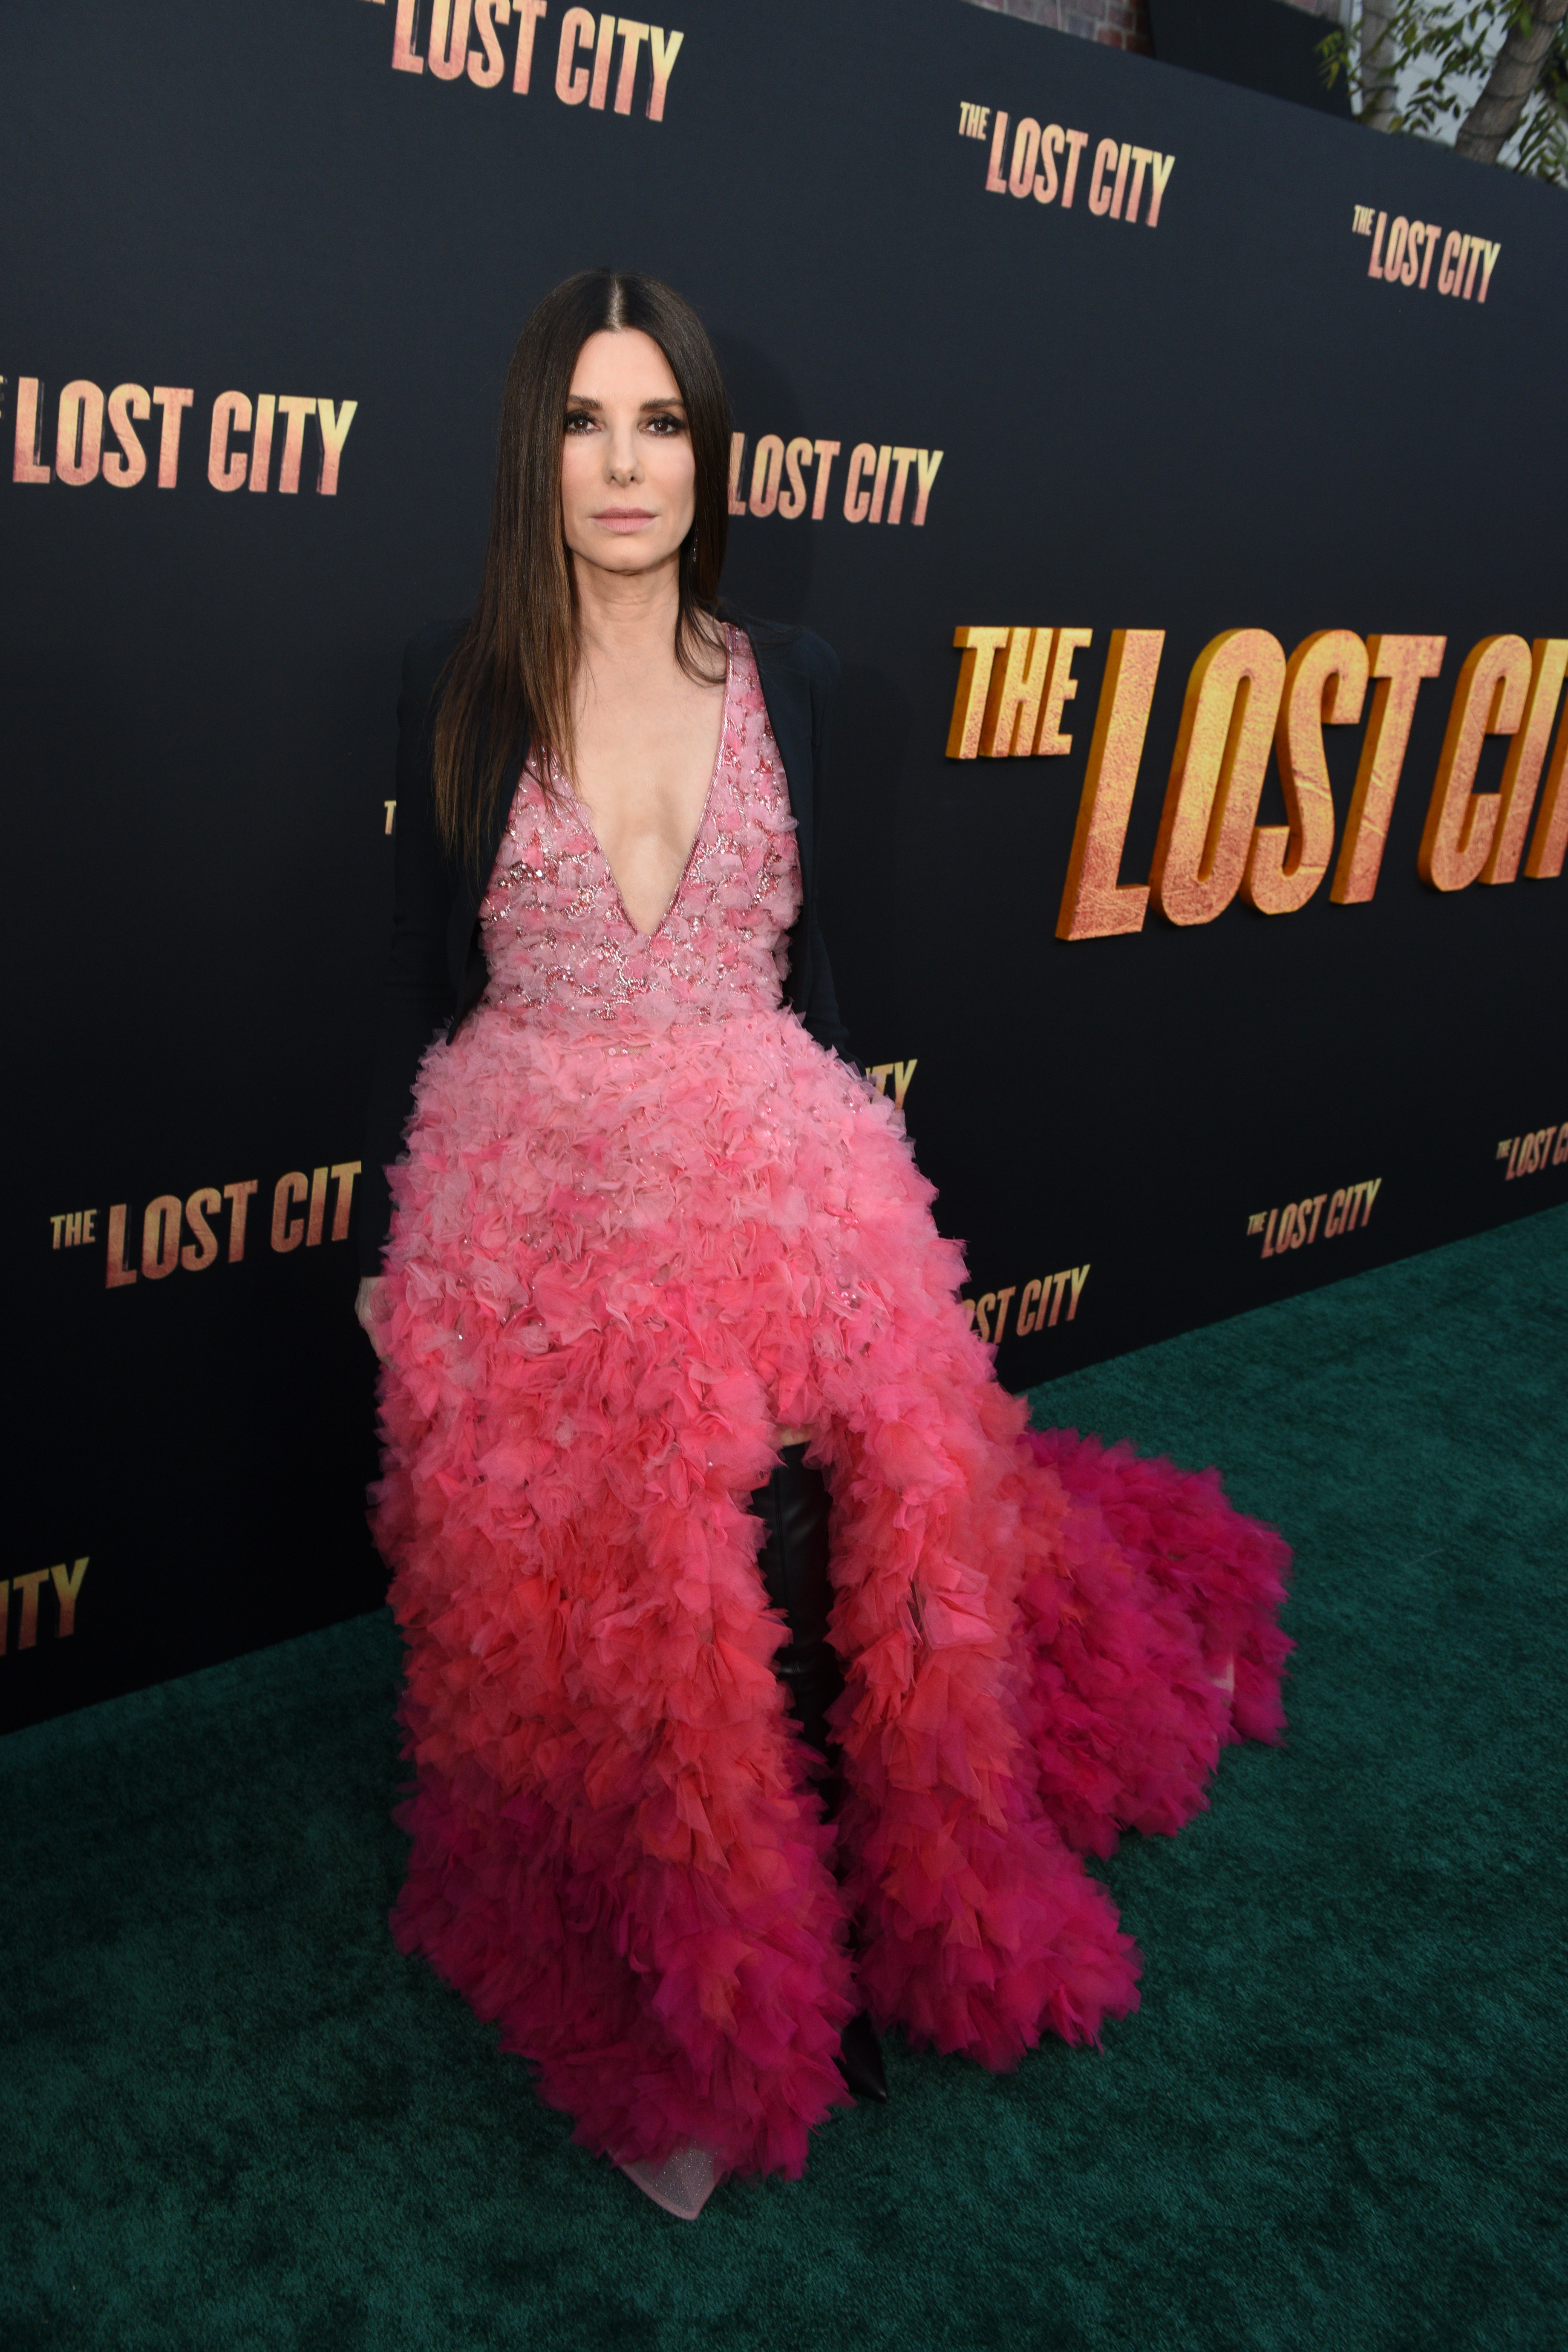 Sandra Bullock asiste al estreno en Los Ángeles de "The Lost City" en el Regency Village Theatre el 21 de marzo de 2022 en Los Ángeles, California | Foto: Getty Images